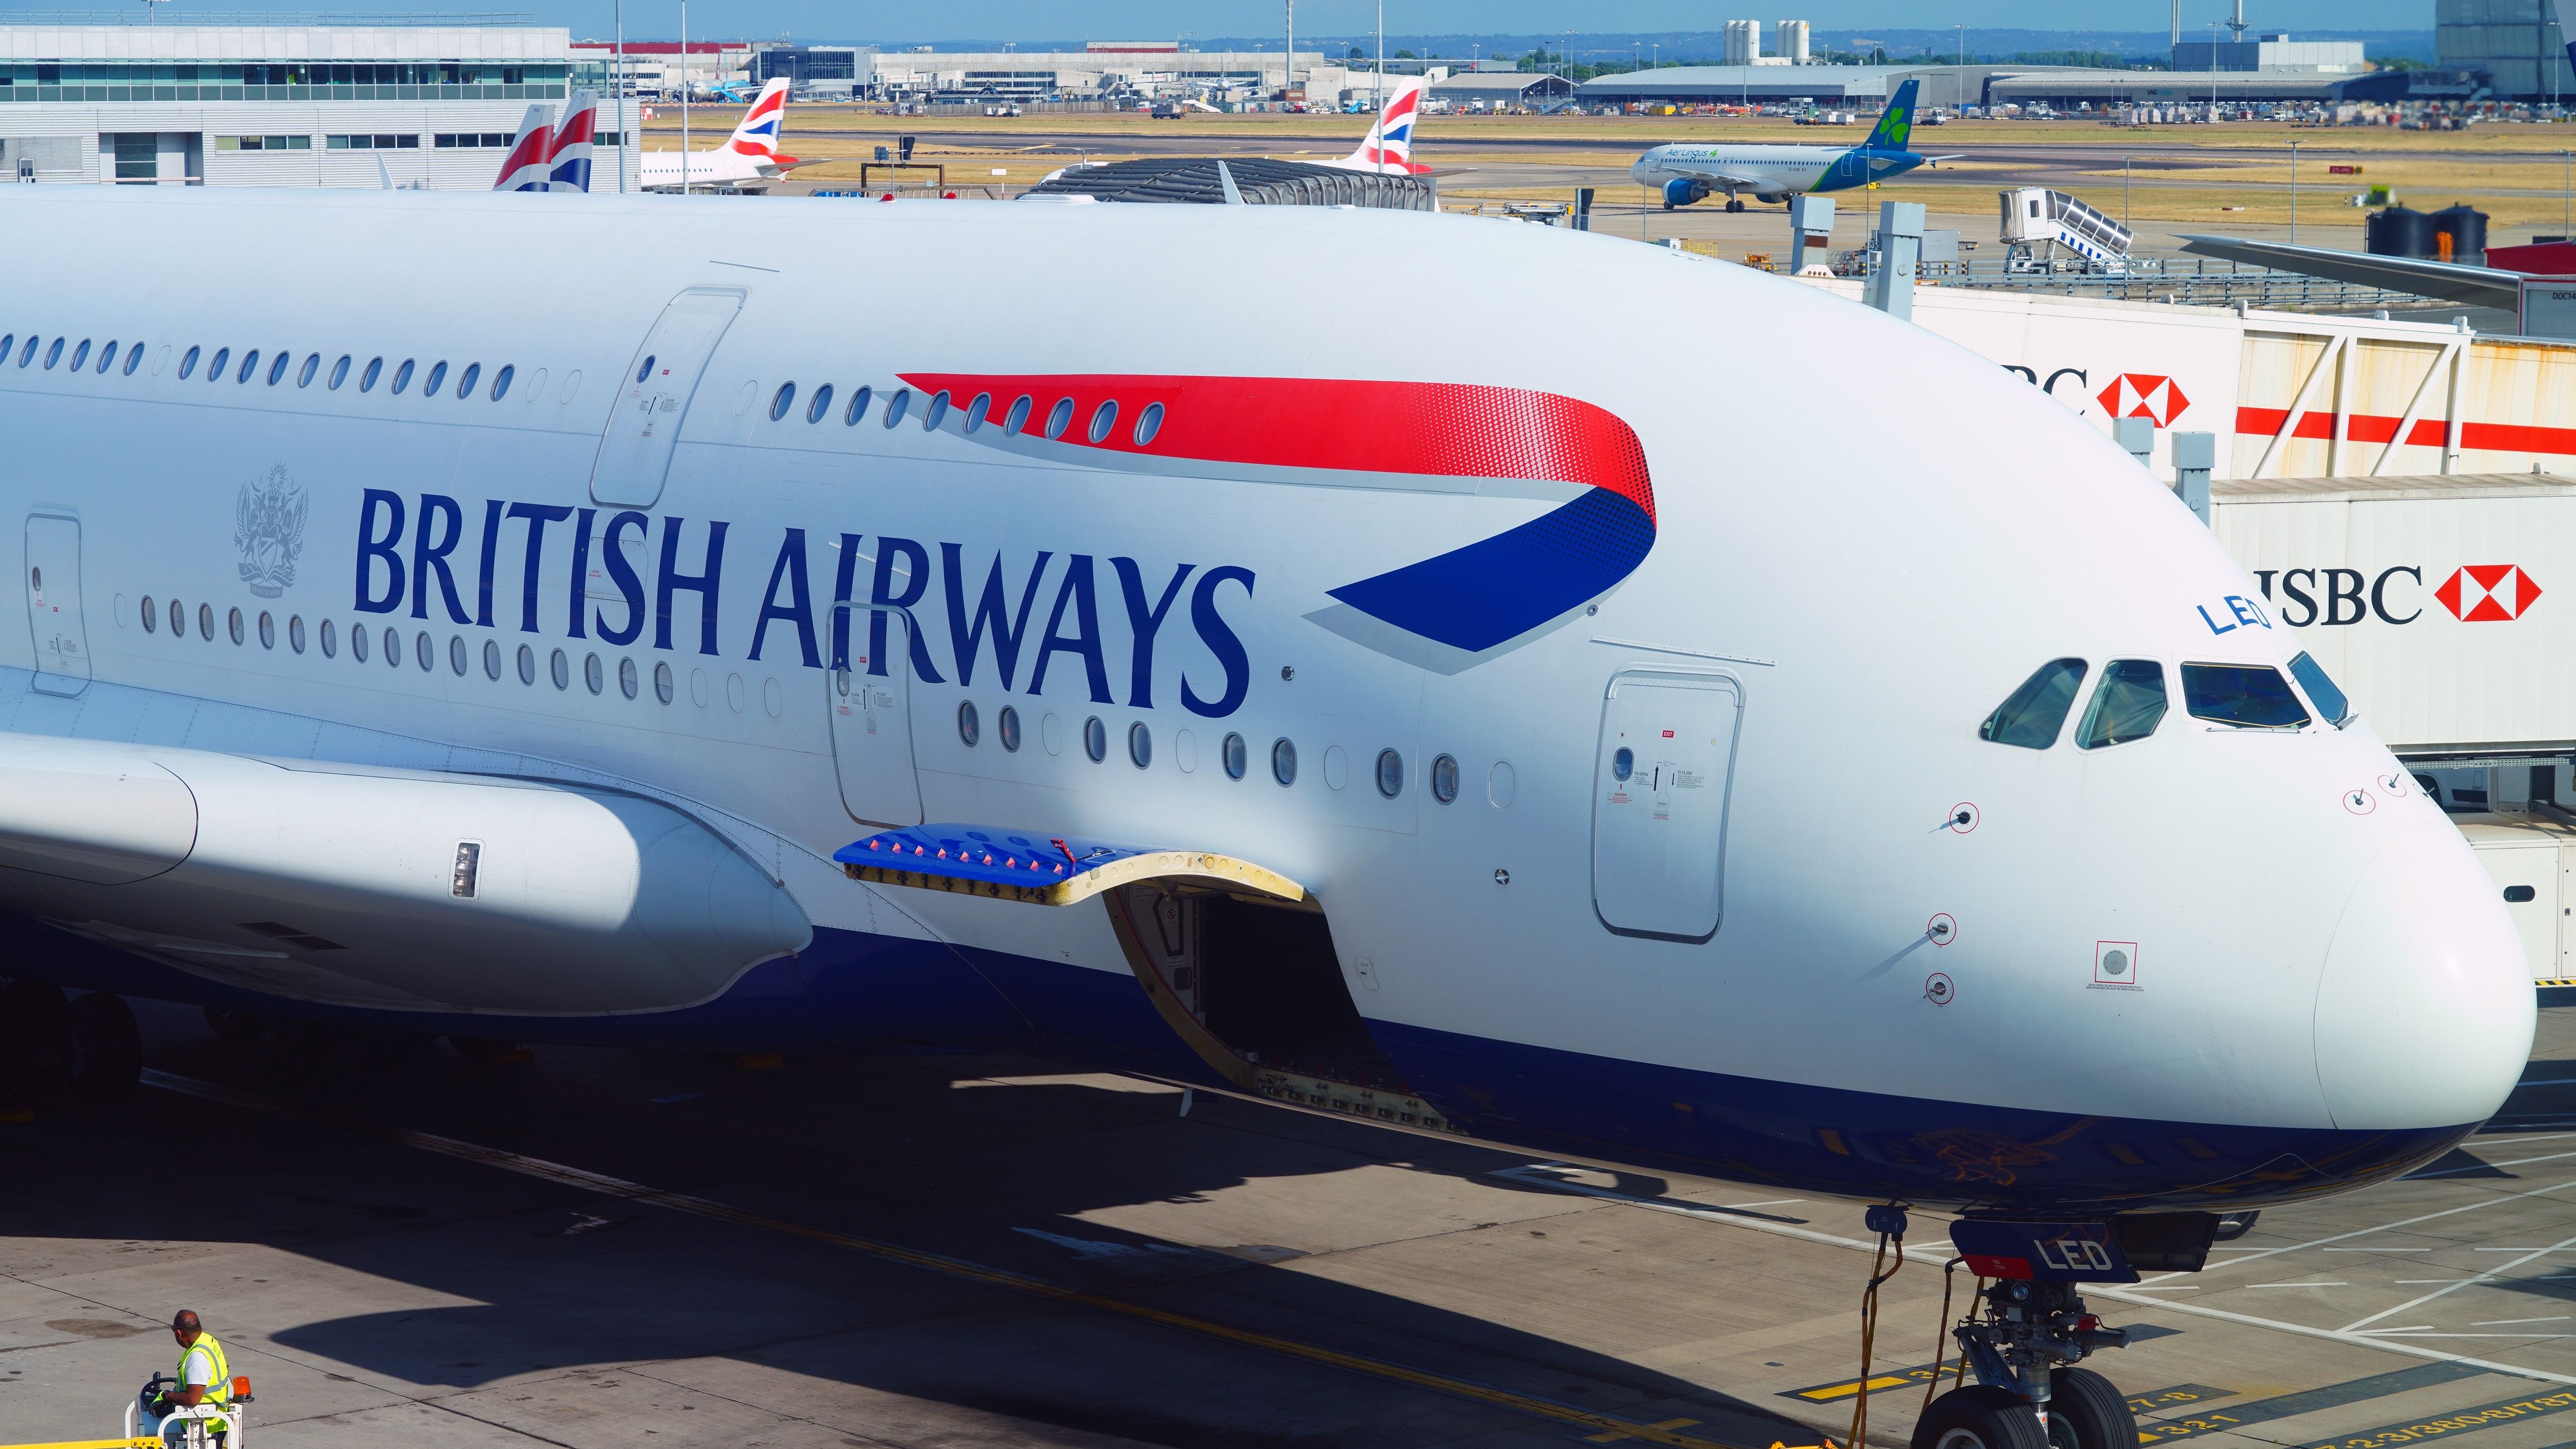 British Airways Airbus A380 at London Heathrow Airport LHR shutterstock_2179773863